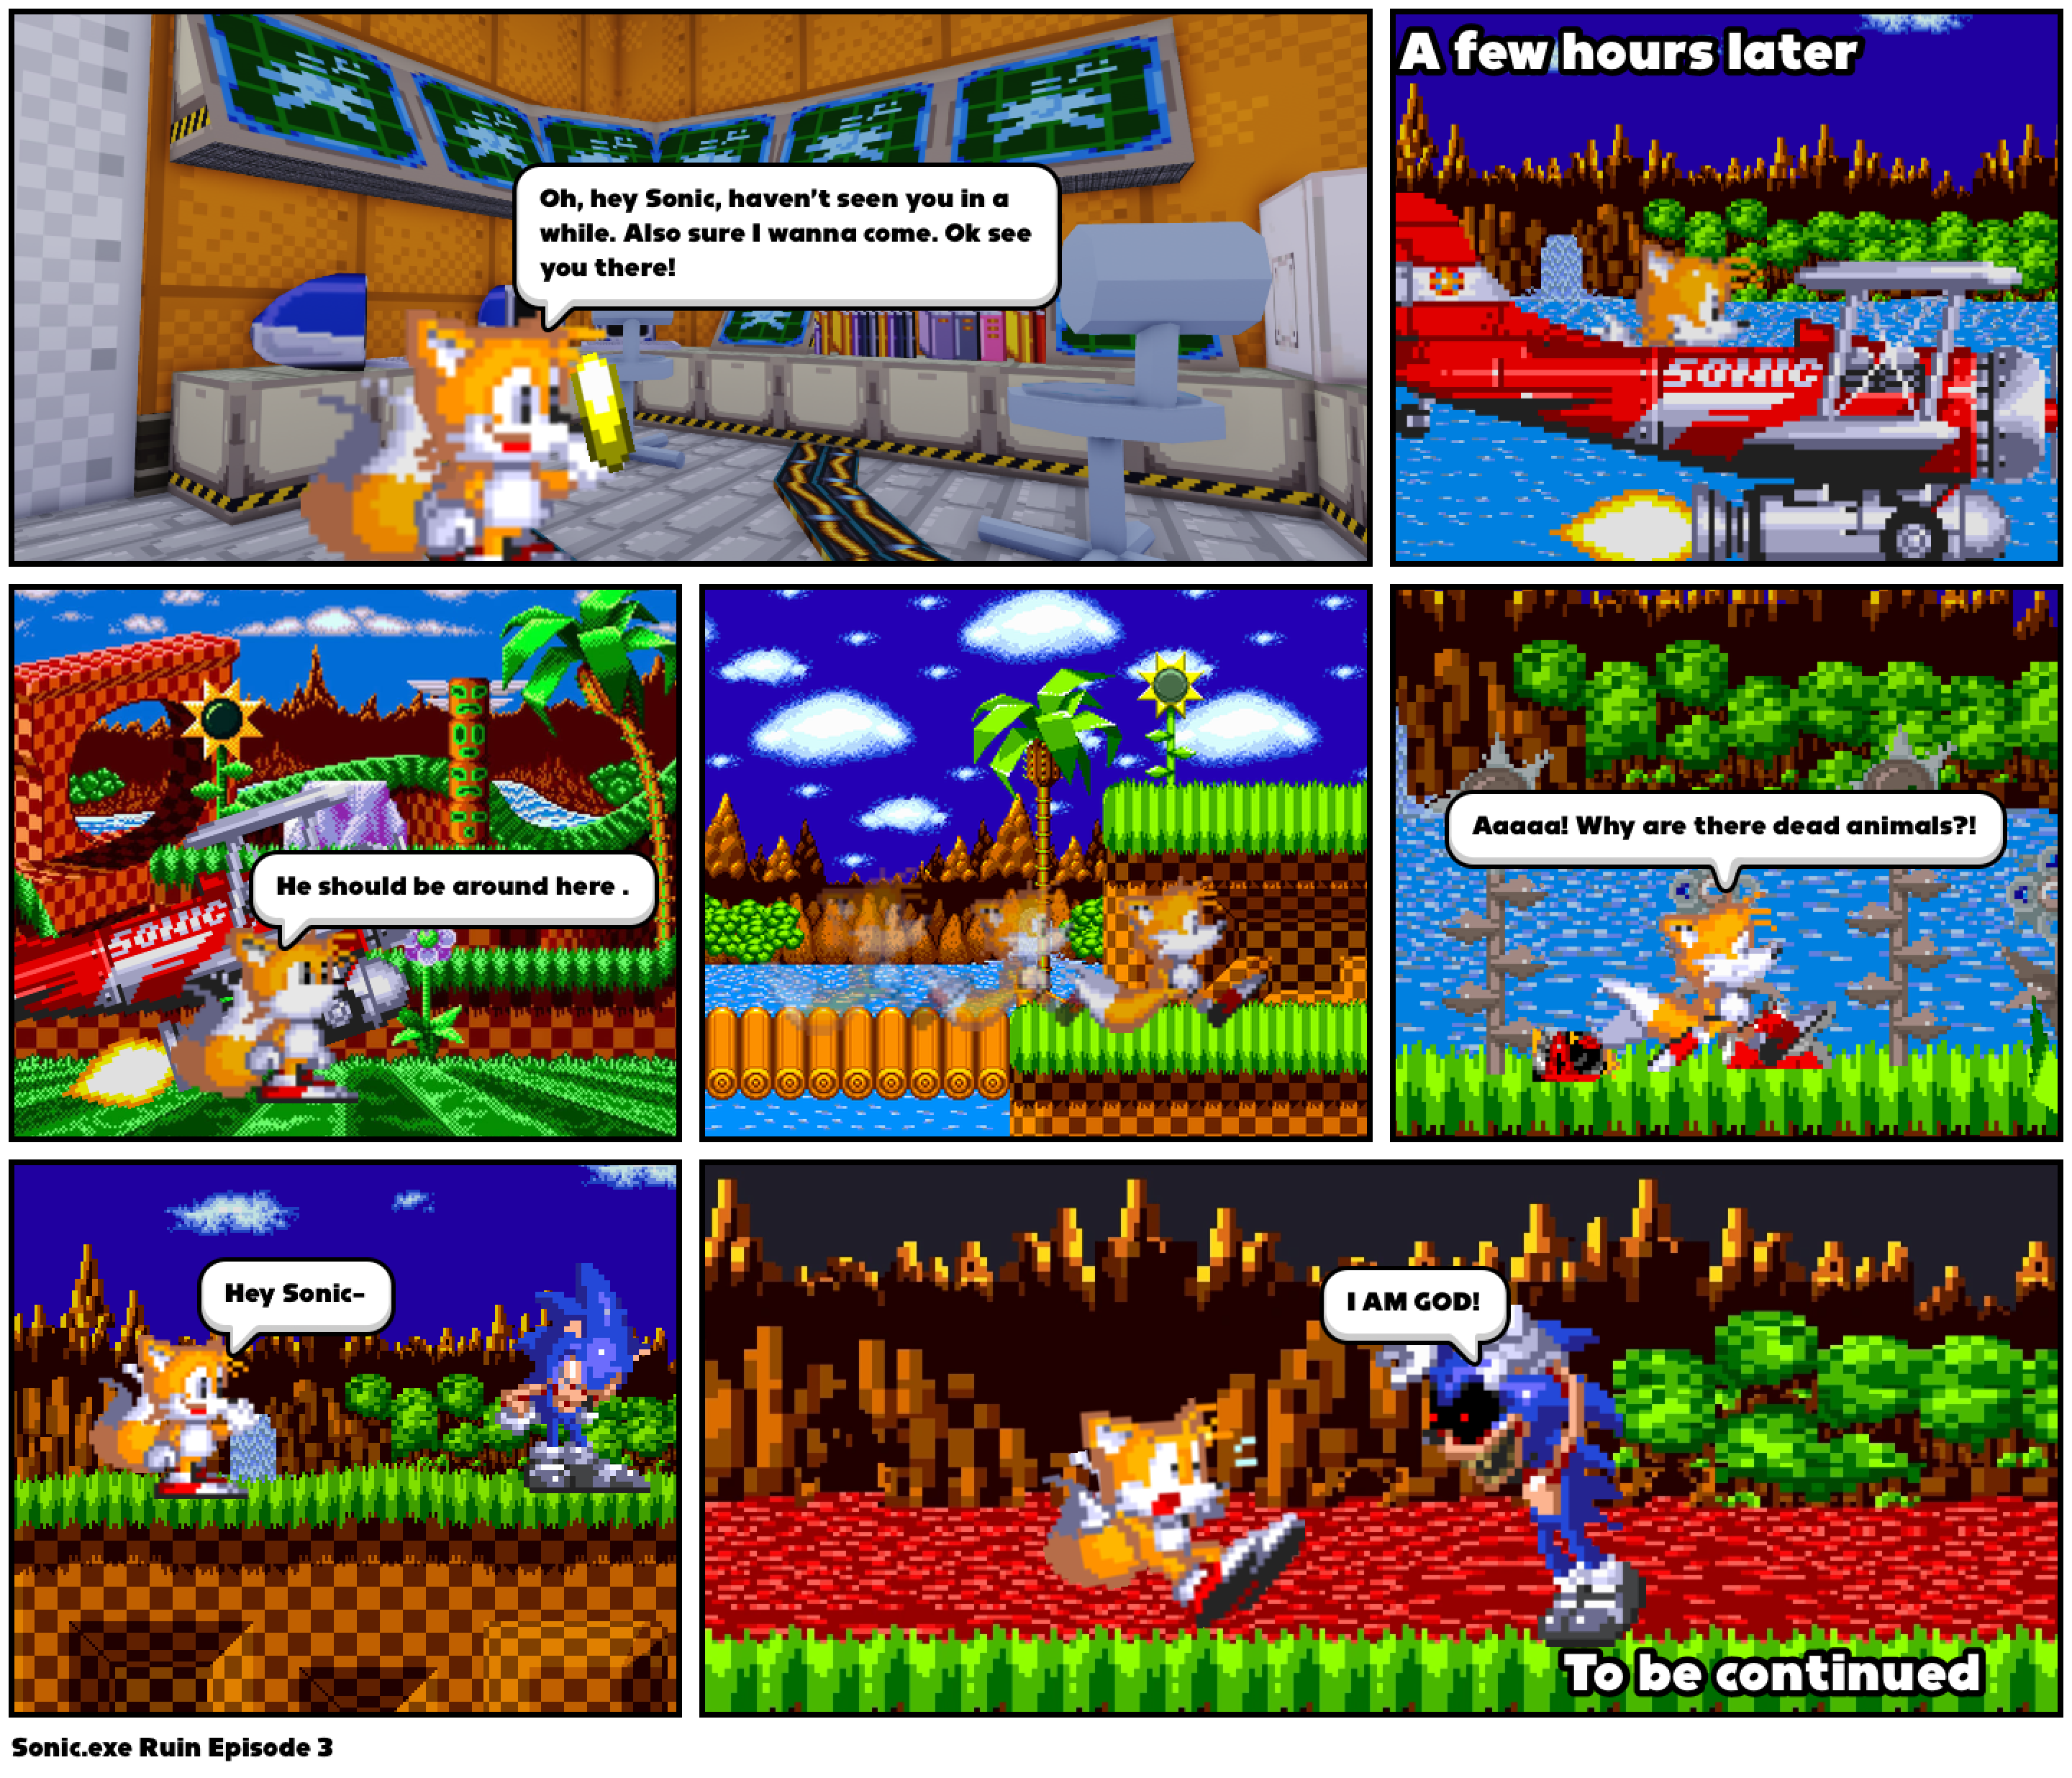 Sonic.exe Ruin Episode 3